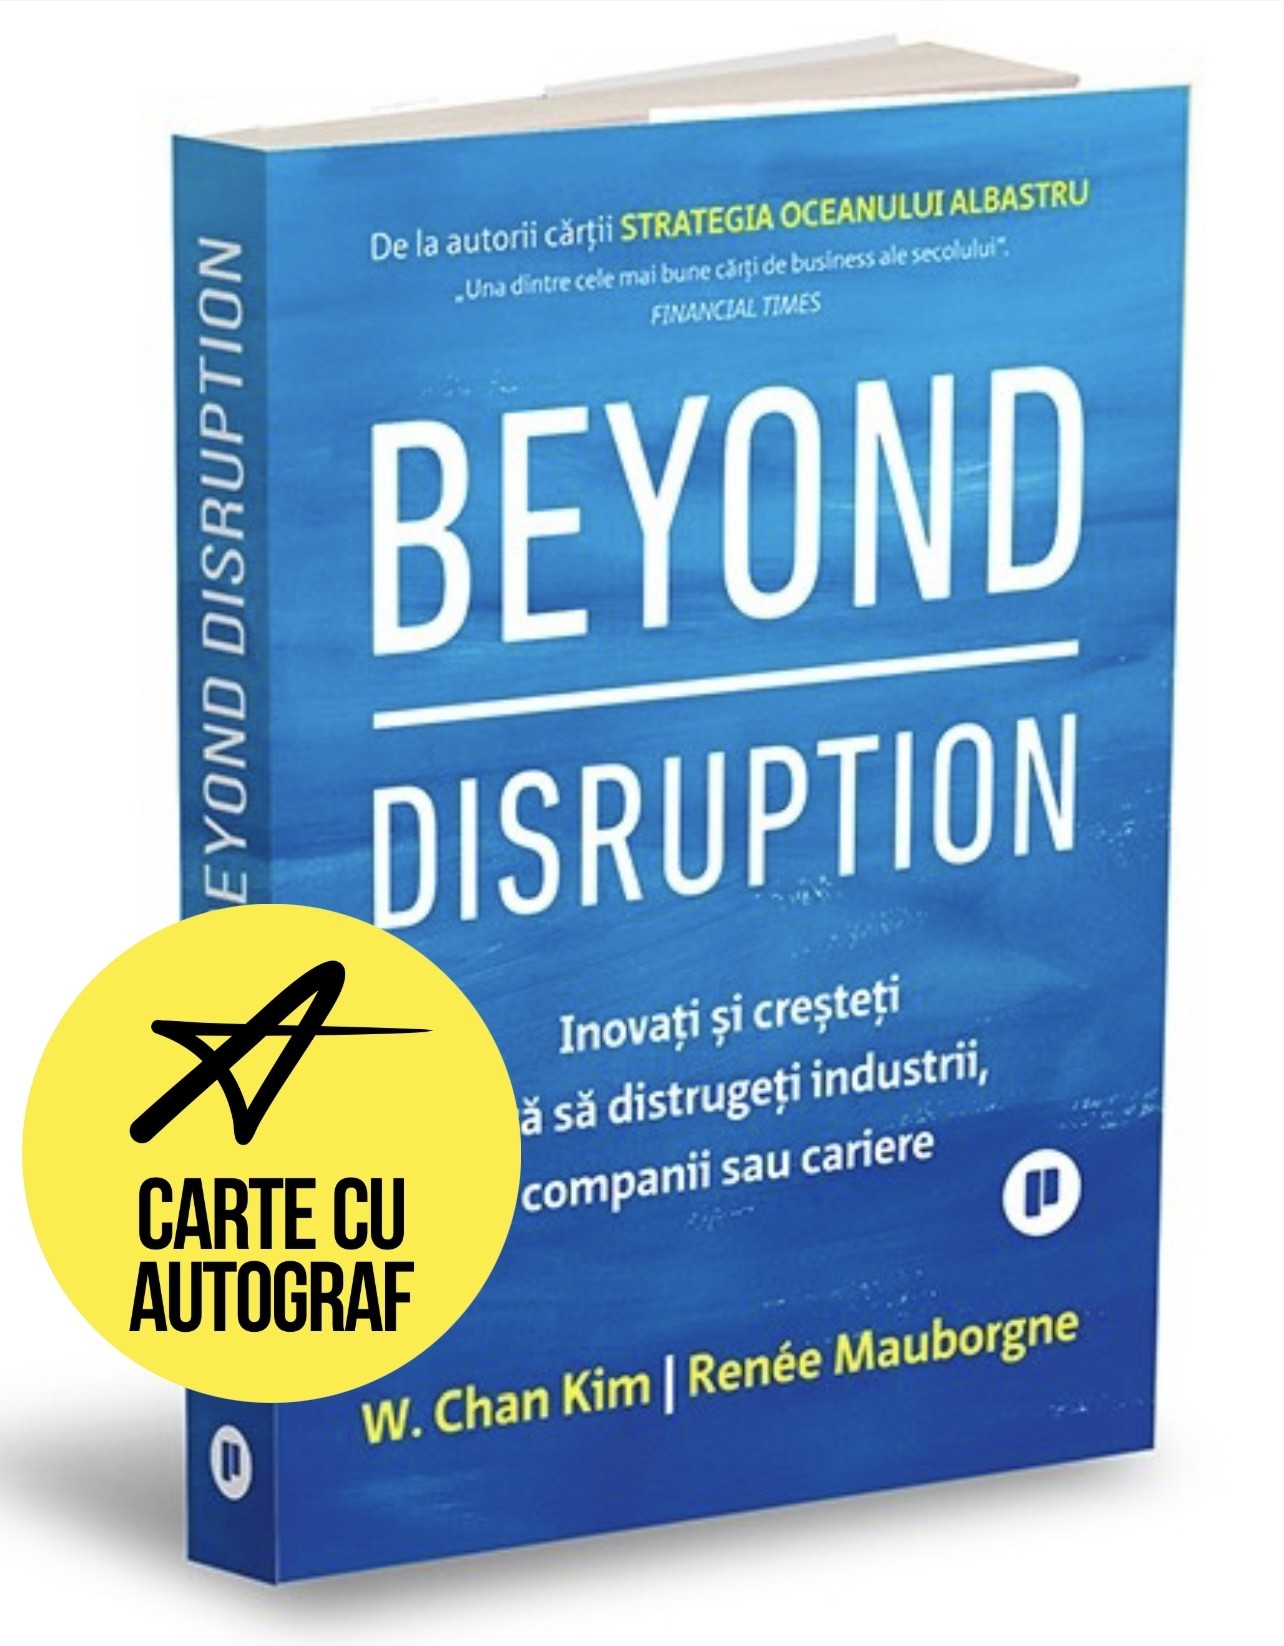 Beyond Disruption — carte cu autograf — cantitate limitată